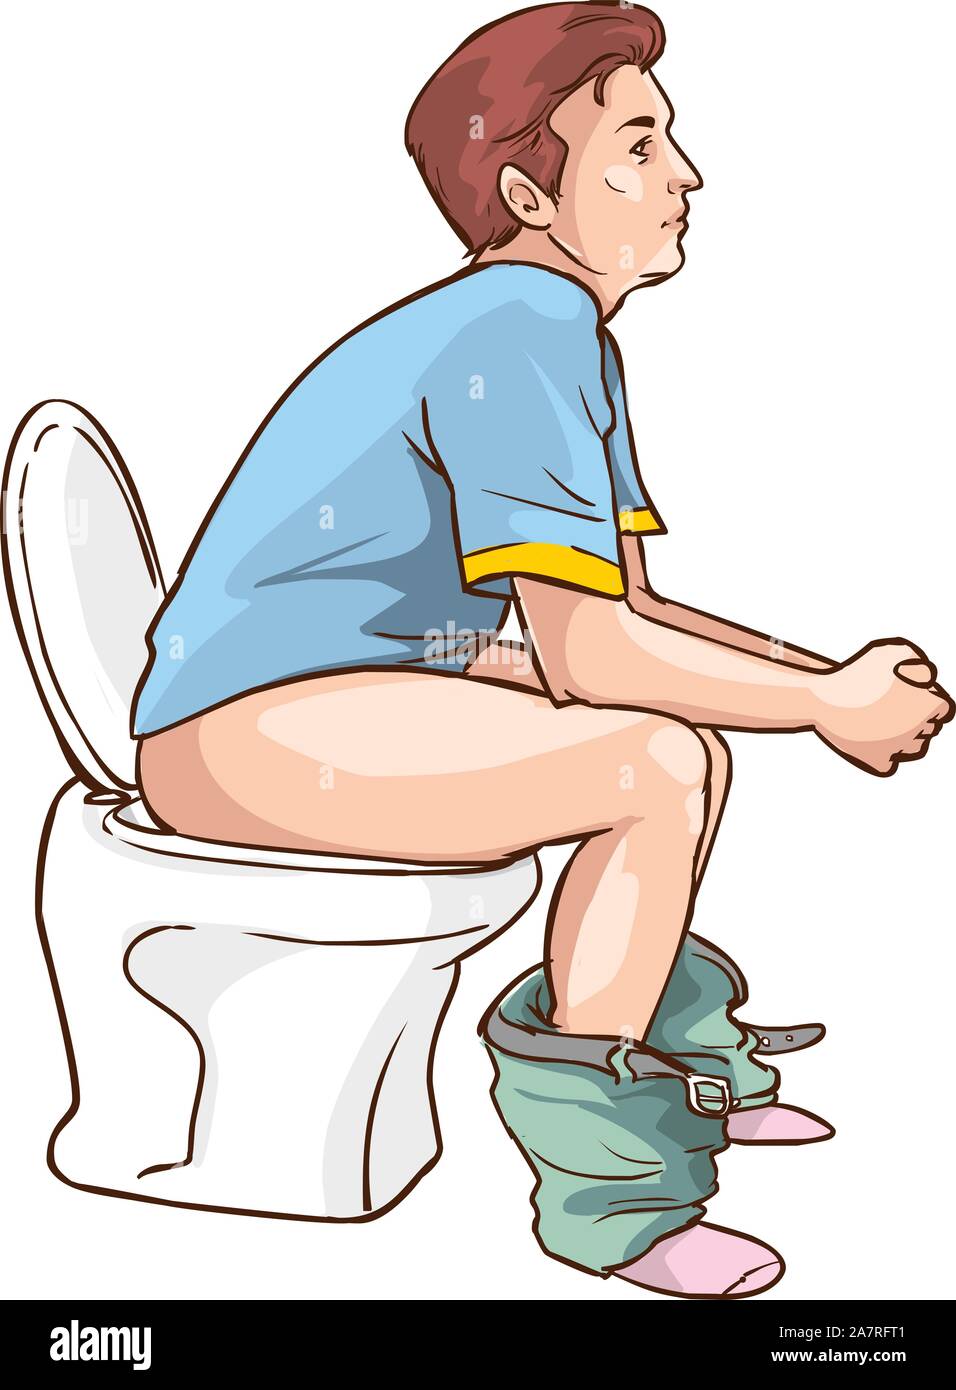 Man sitting on toilet vector illustration Stock Vector